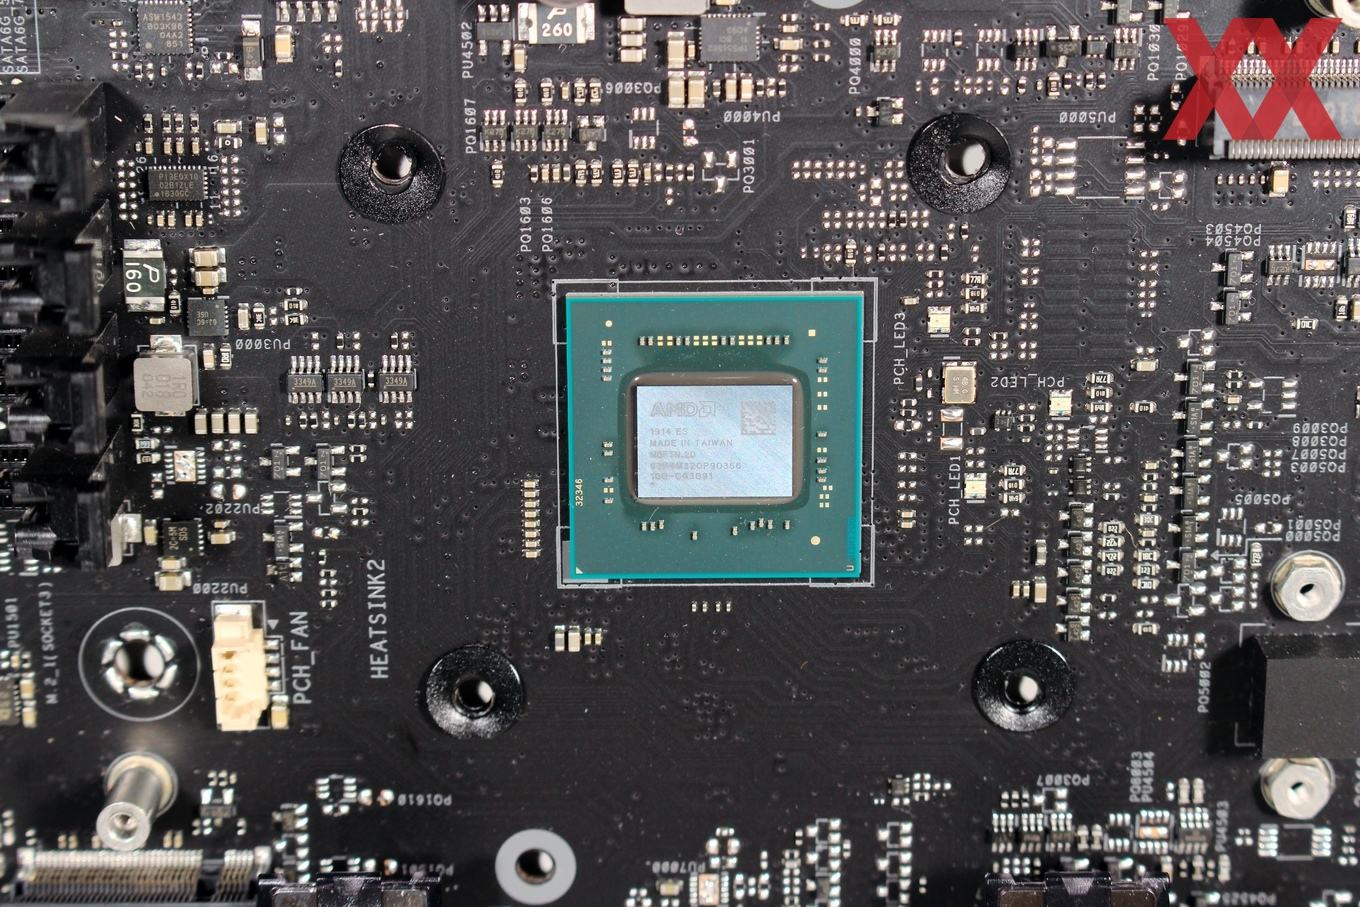 Amd b550 процессоры. AMD b550 сокет. Чипсет материнской платы b550. B550 чипсет АМД. Чипсет в550 процессоры.